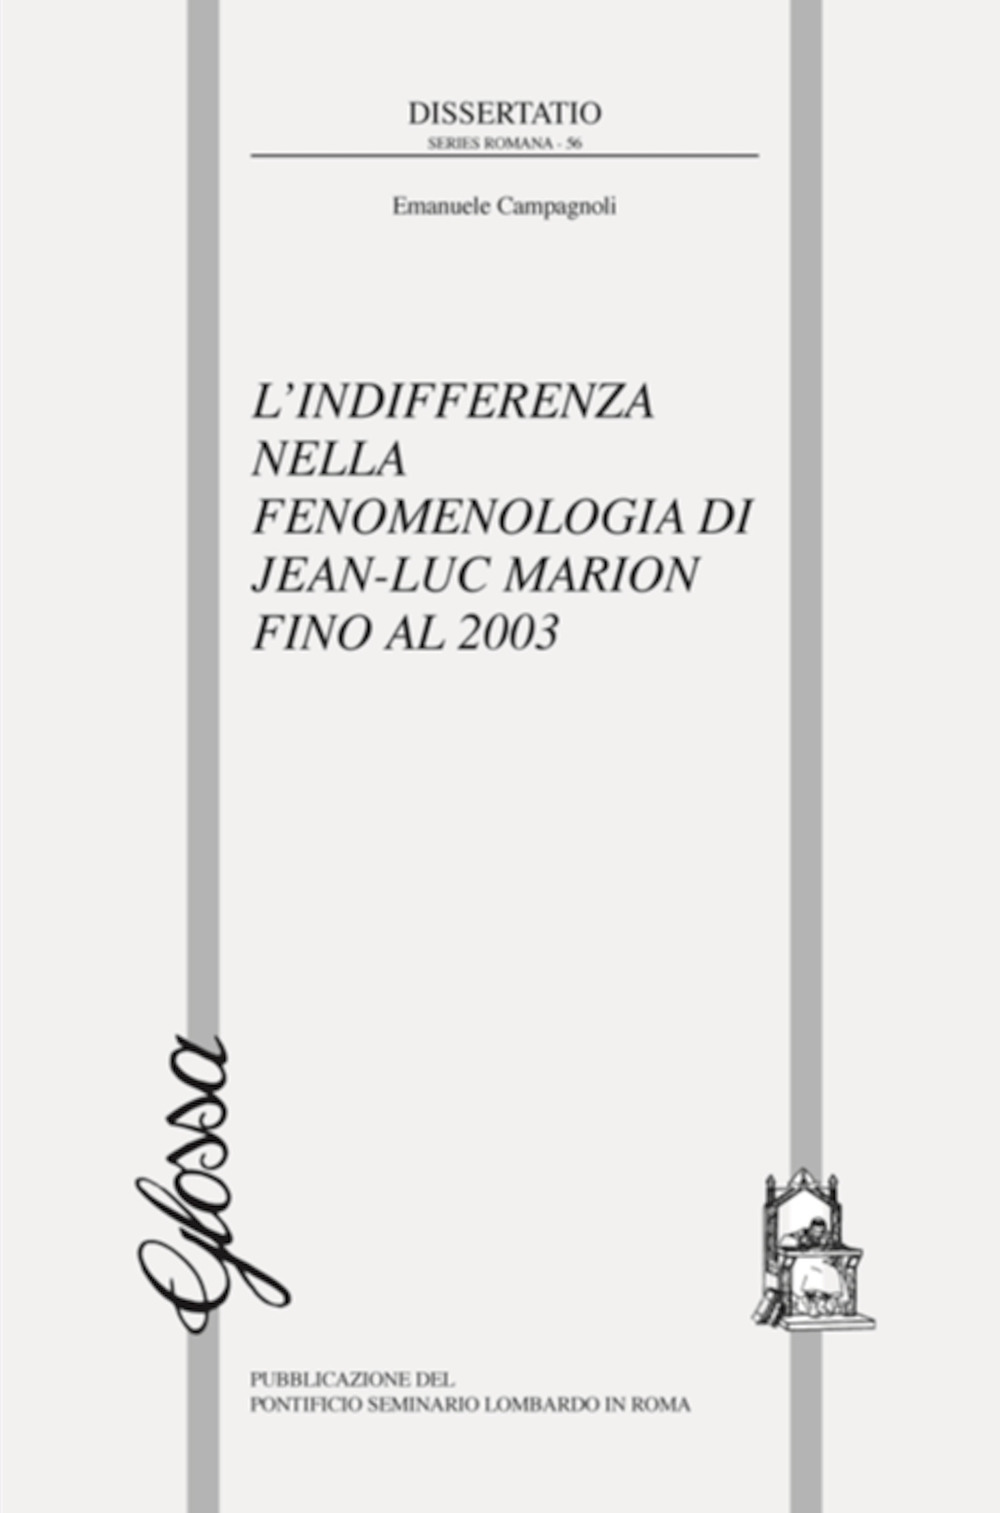 L'indifferenza nella fenomenologia di Jean-Luc Marion fino al 2003